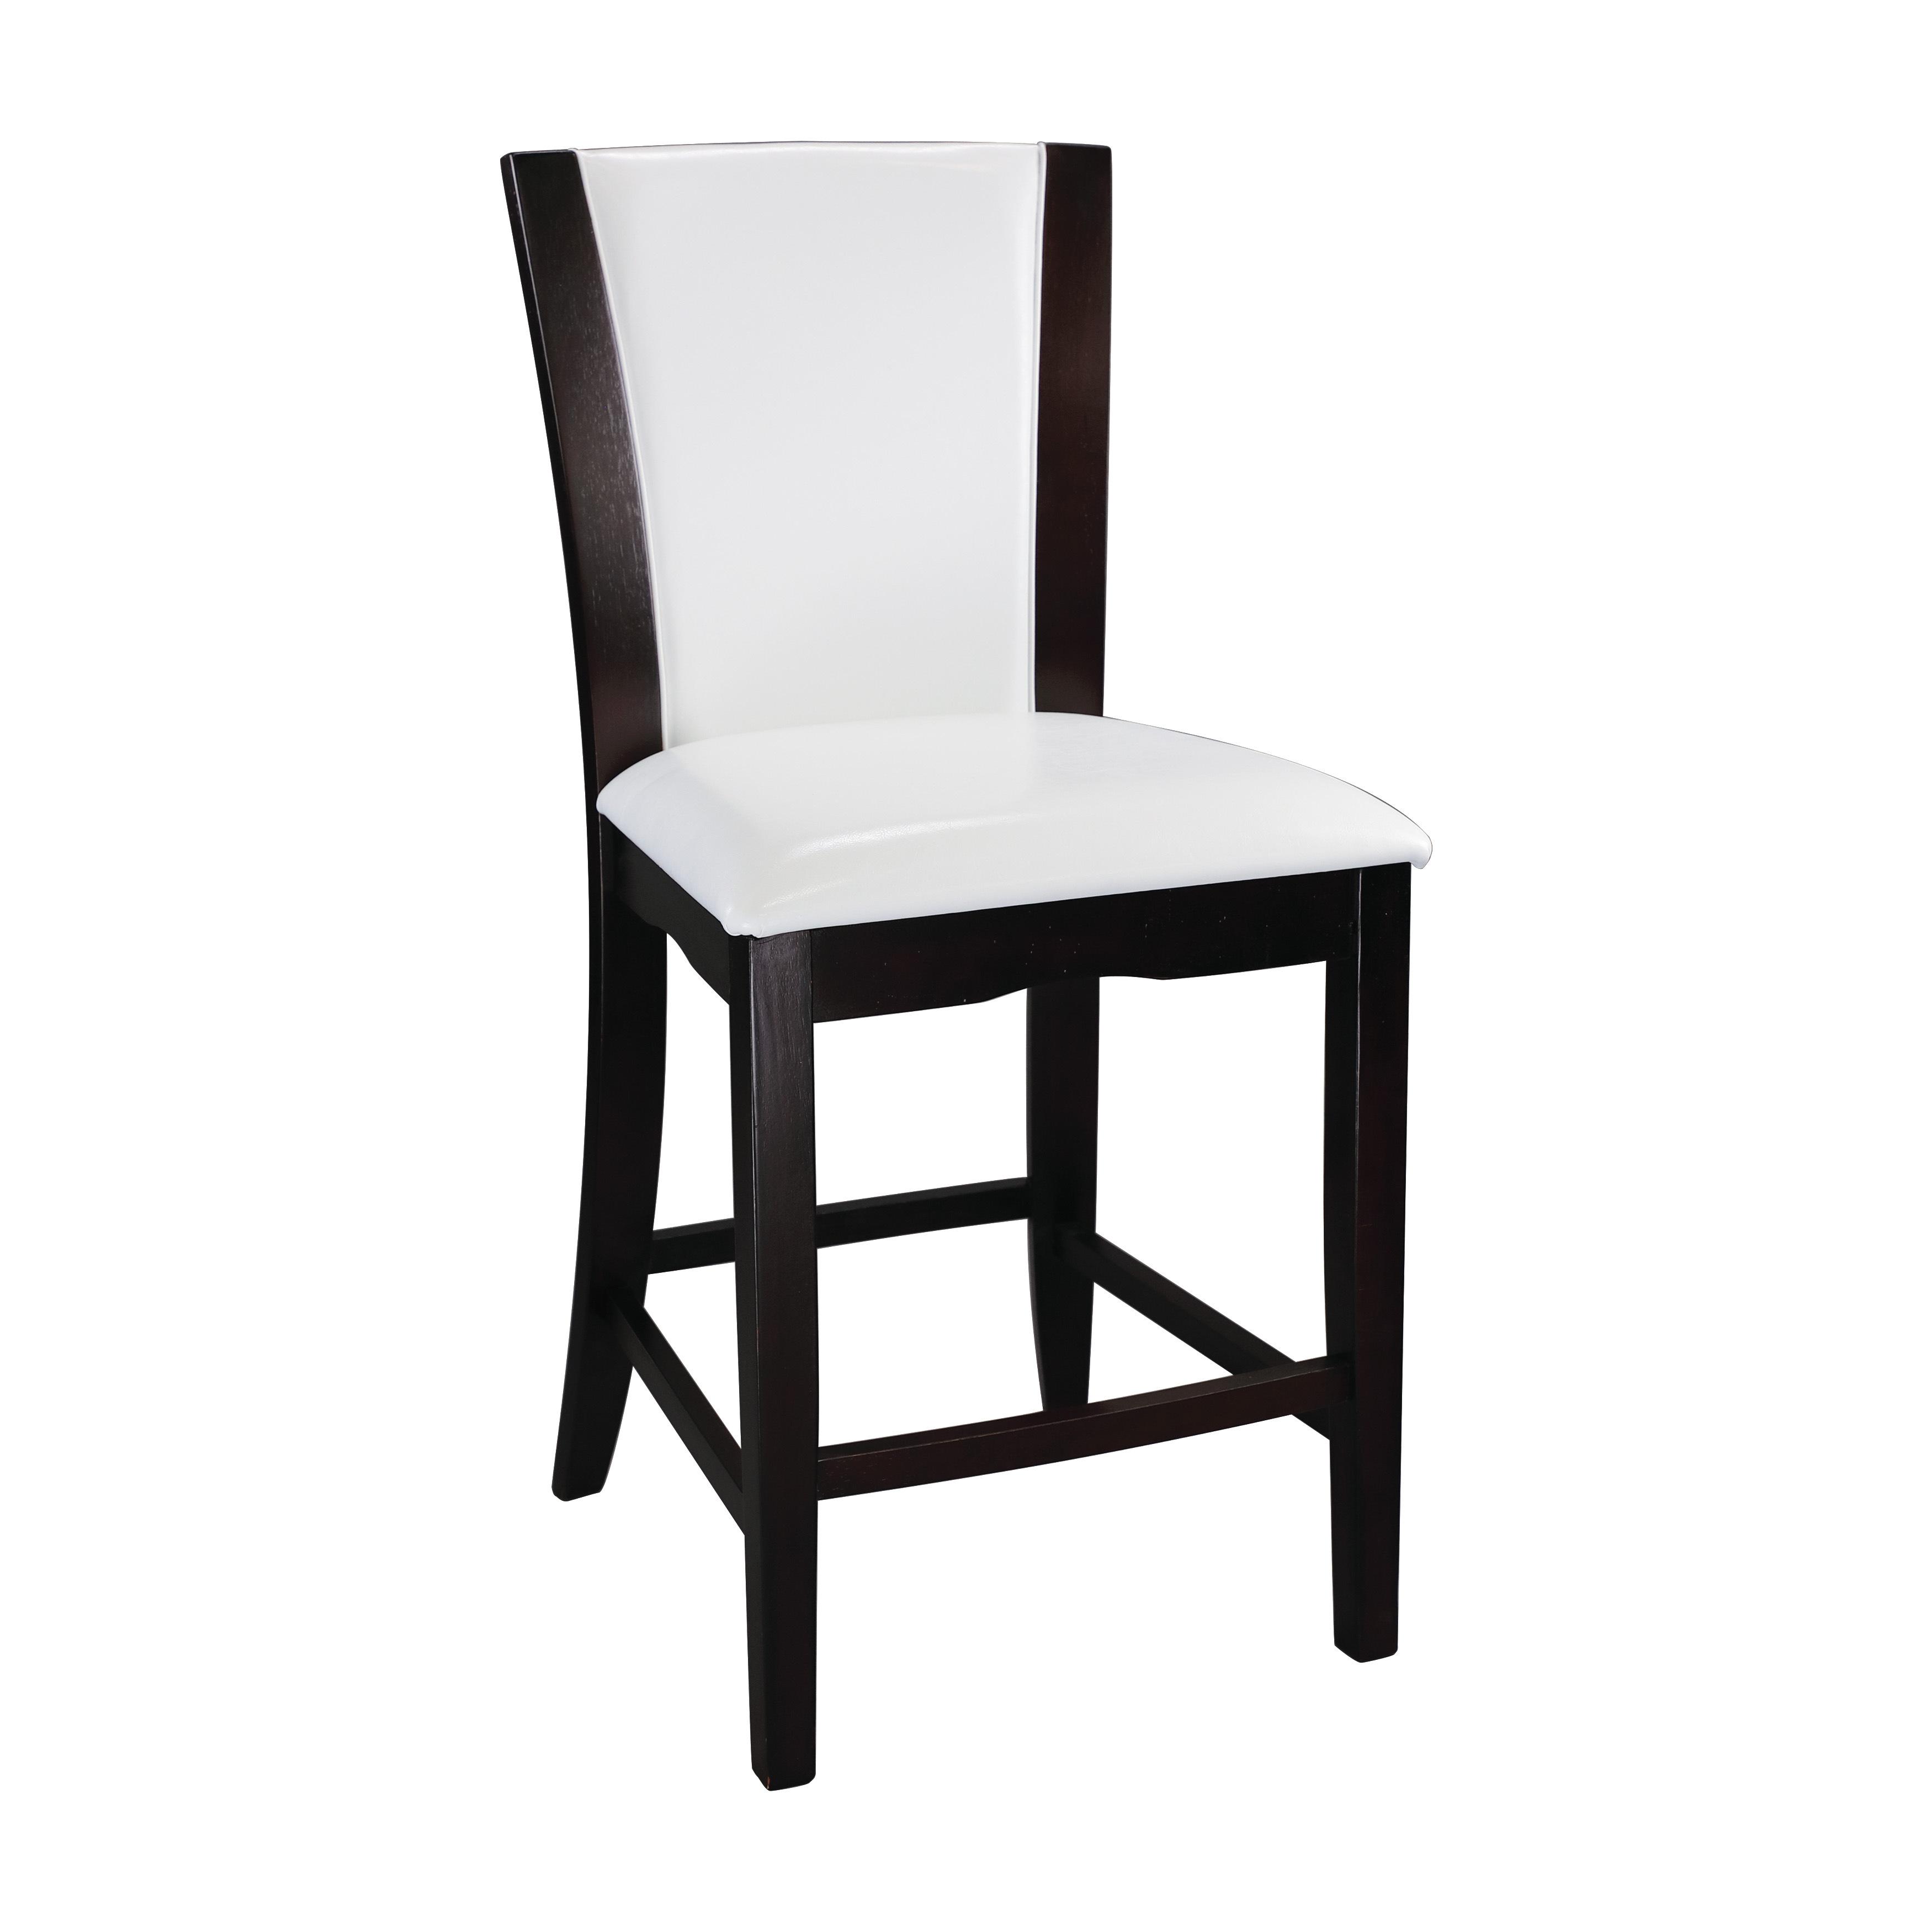 Contemporary Counter Height Chair 710-24W Daisy 710-24W in Espresso, White 